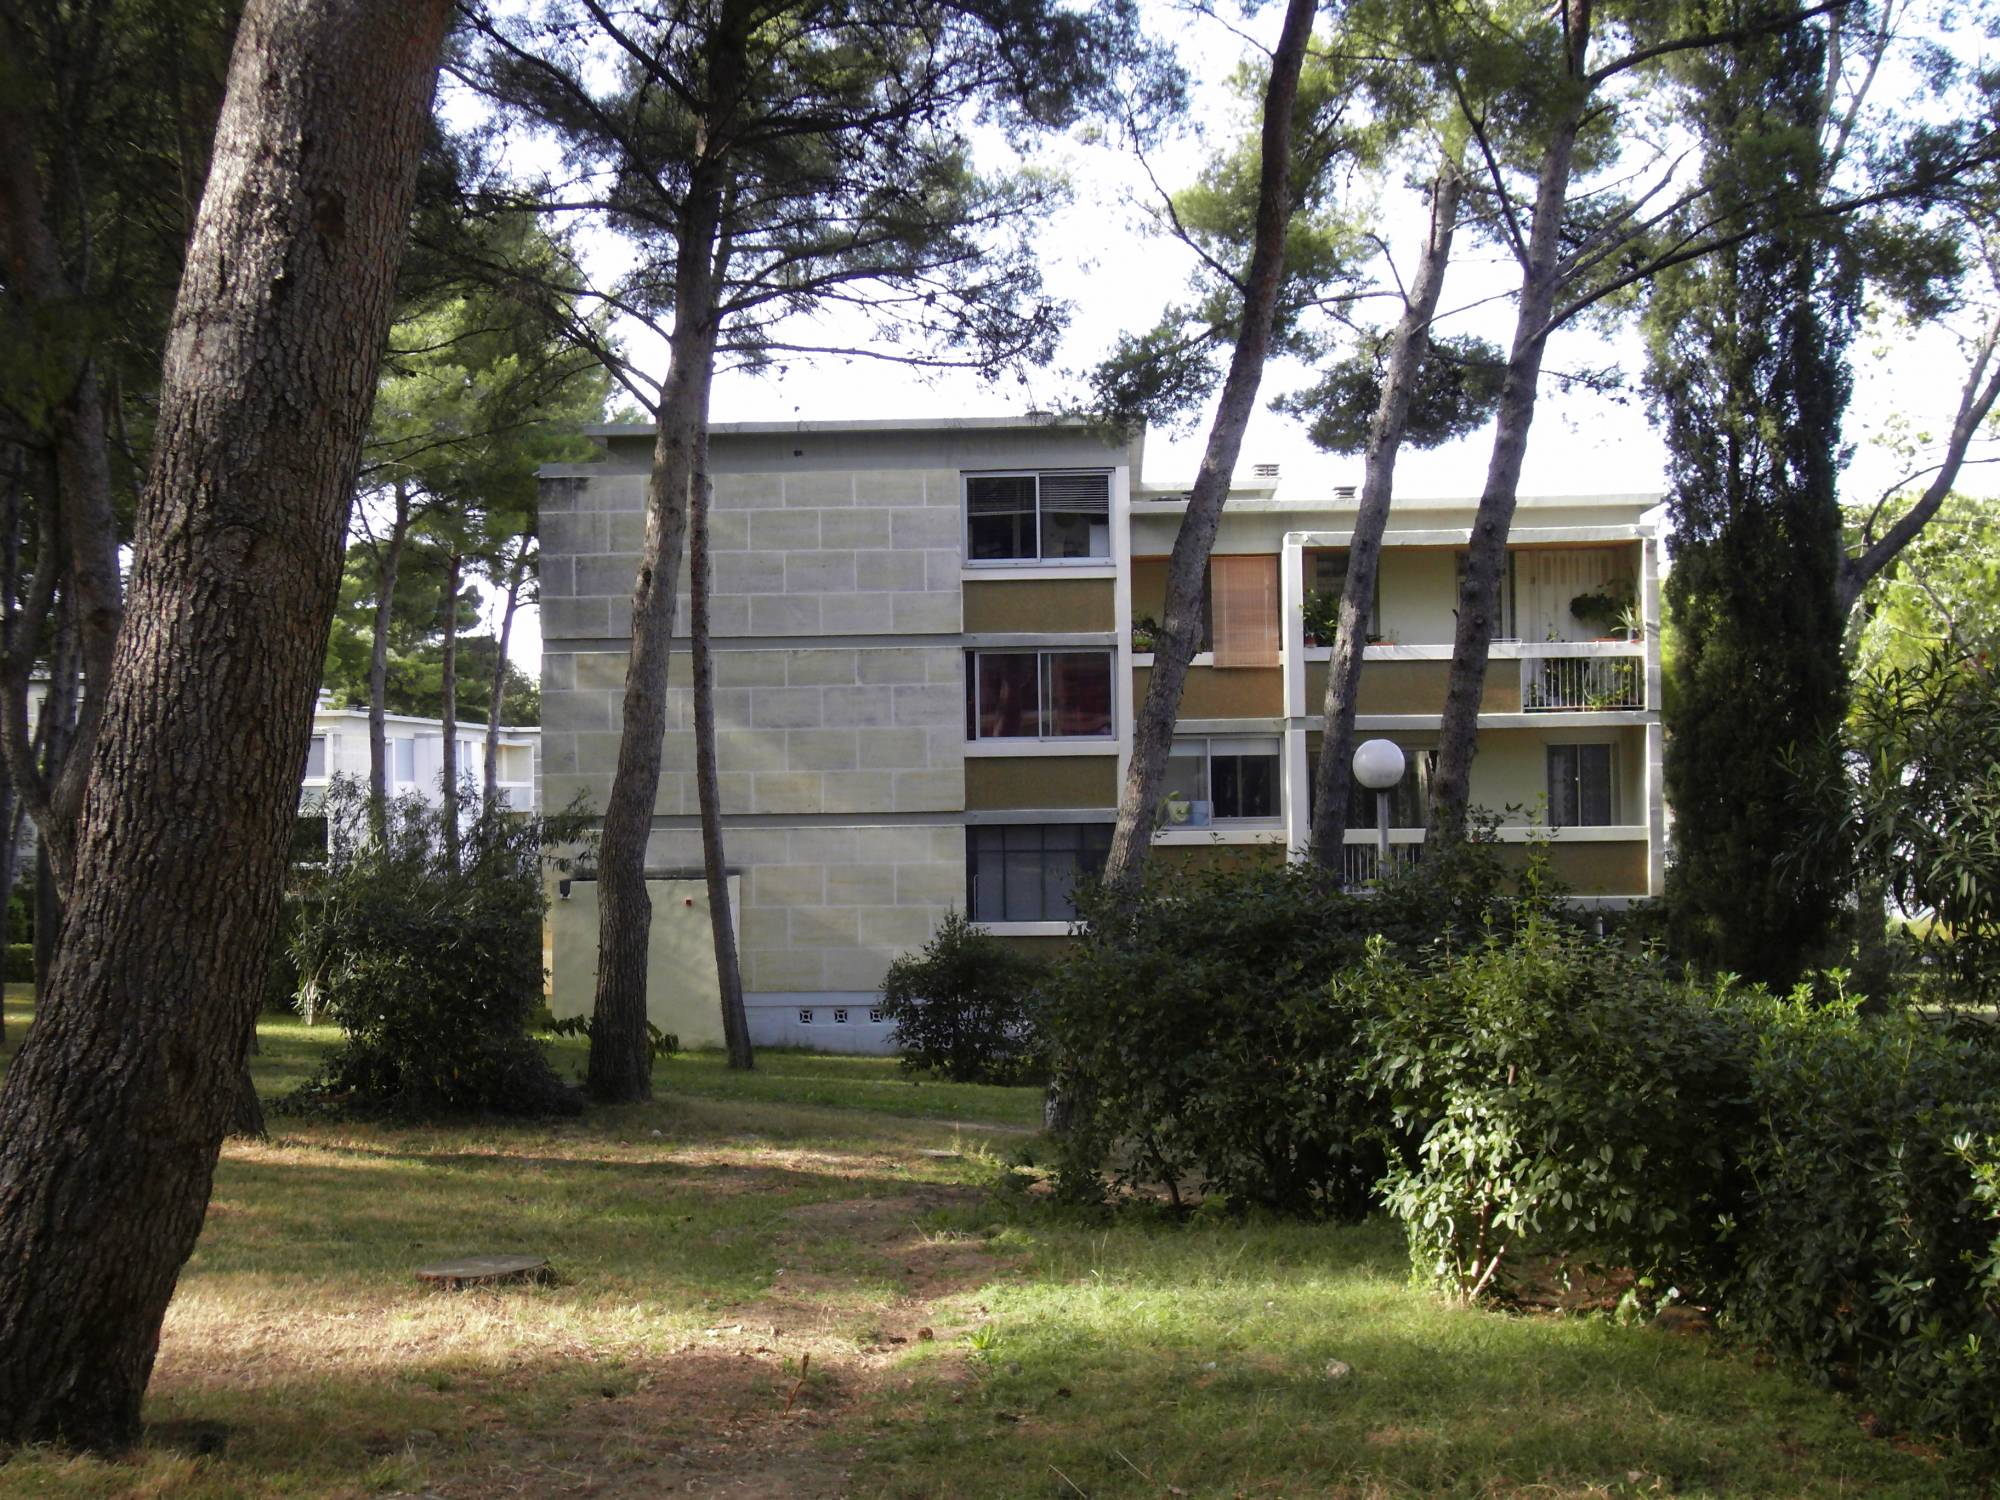 Provencia immobilier est heureux de vous présenter à la vente un appartement 3 pièces de 54 m² au coeur du Roy d'Espagne 13008 Marseille.